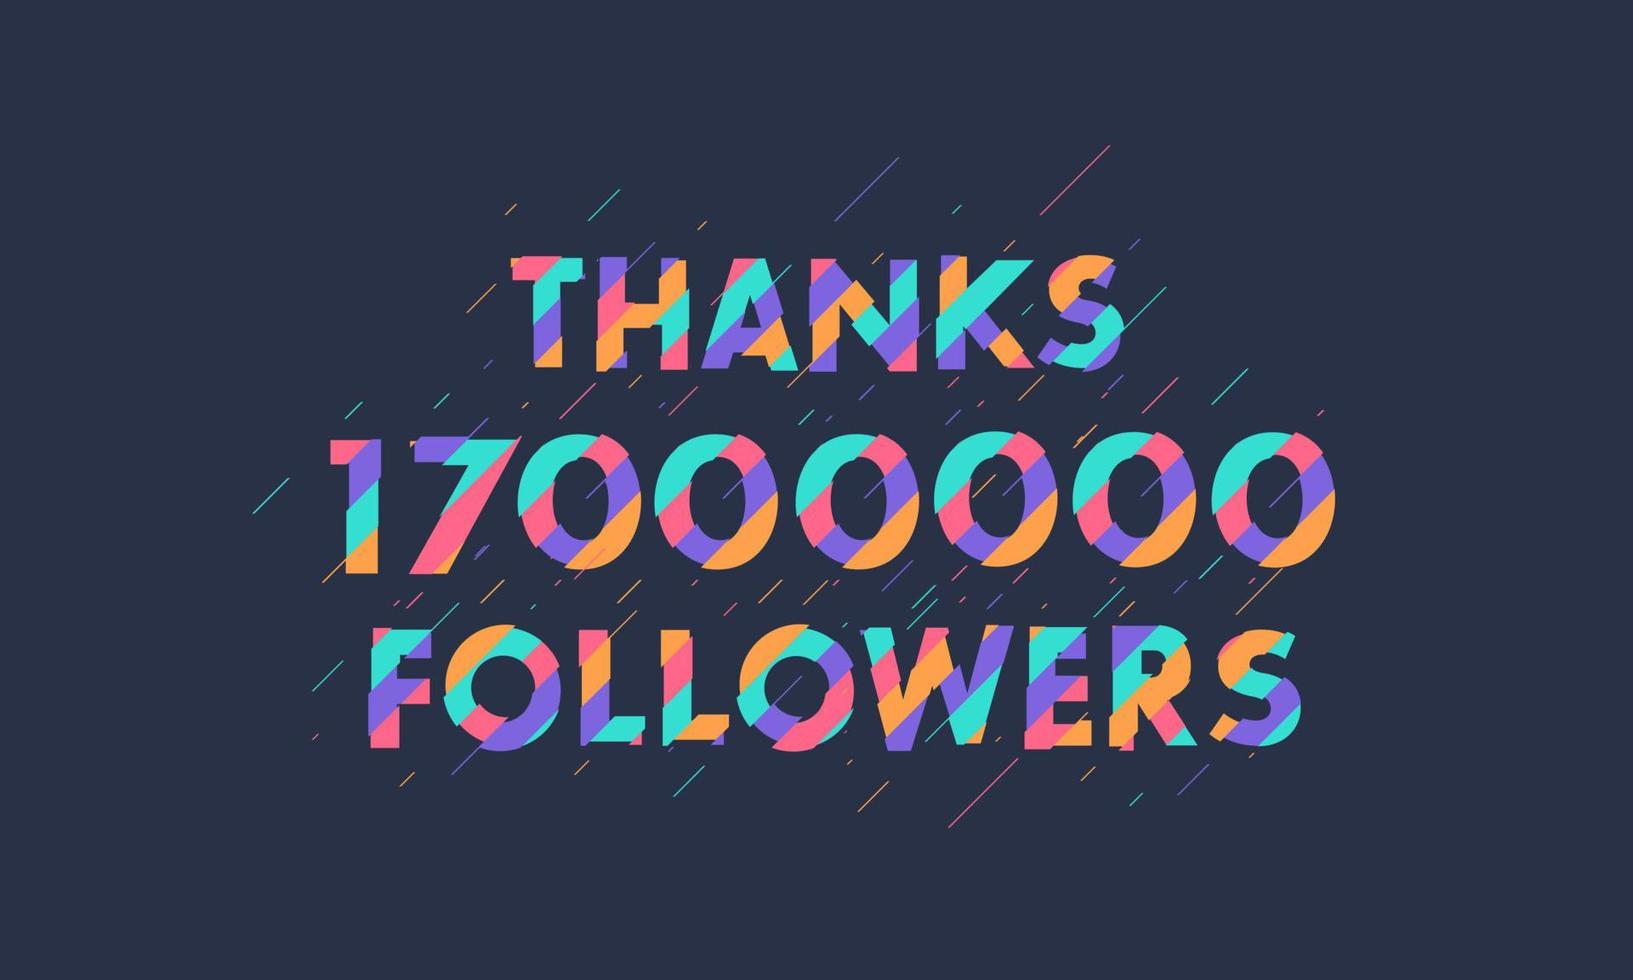 bedankt 17000000 volgers, 17m volgers vieren modern kleurrijk ontwerp. vector